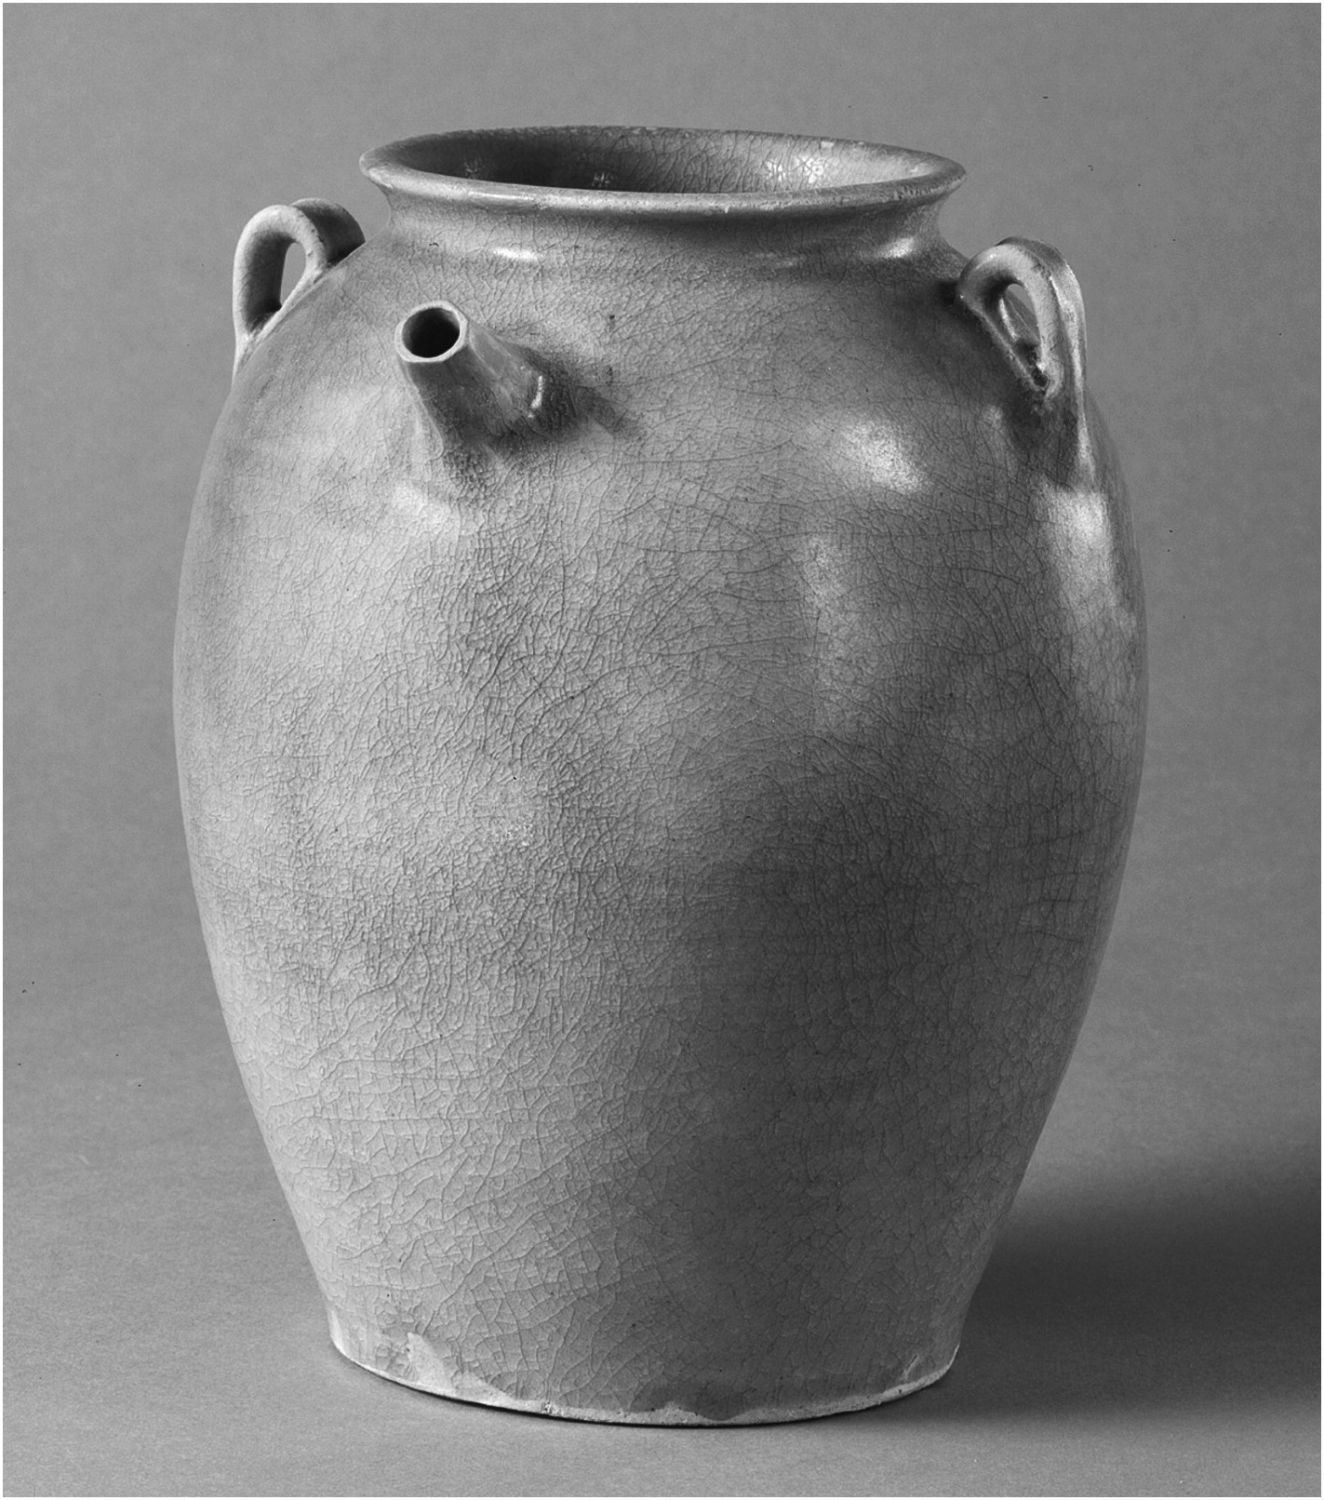 图4 青瓷水罐，可能是浙江越窑青瓷，勿里洞船货，9世纪早期，高22厘米